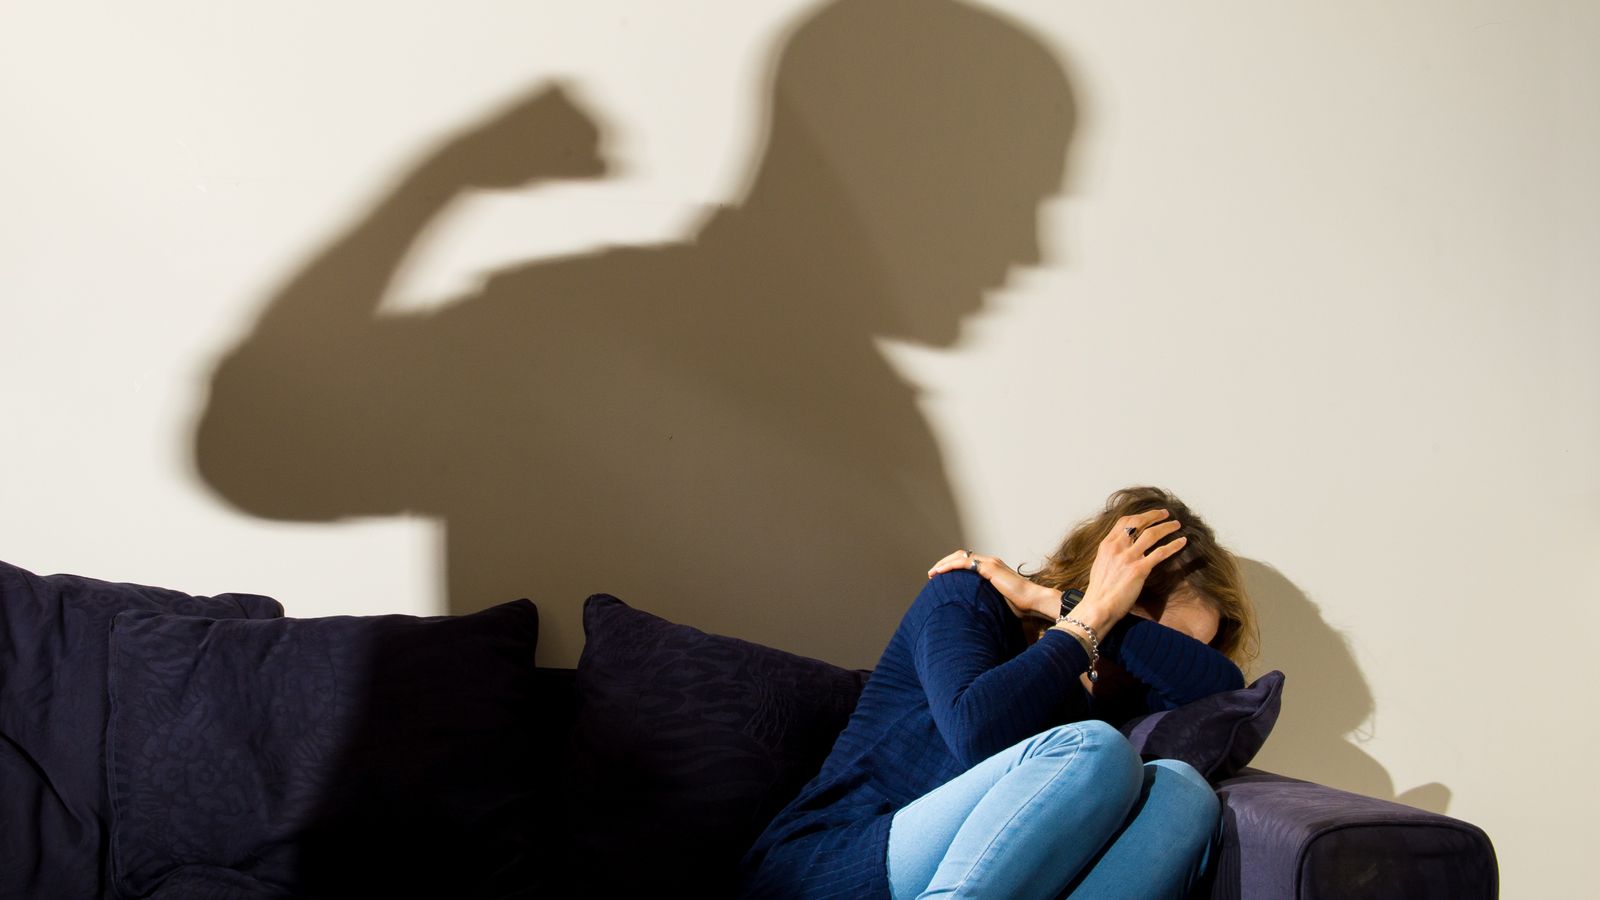 Жени, обвиняващи партньори полицаи в домашно насилие, казват, че полицията на Девън и Корнуол не е успяла да ги разследва правилно